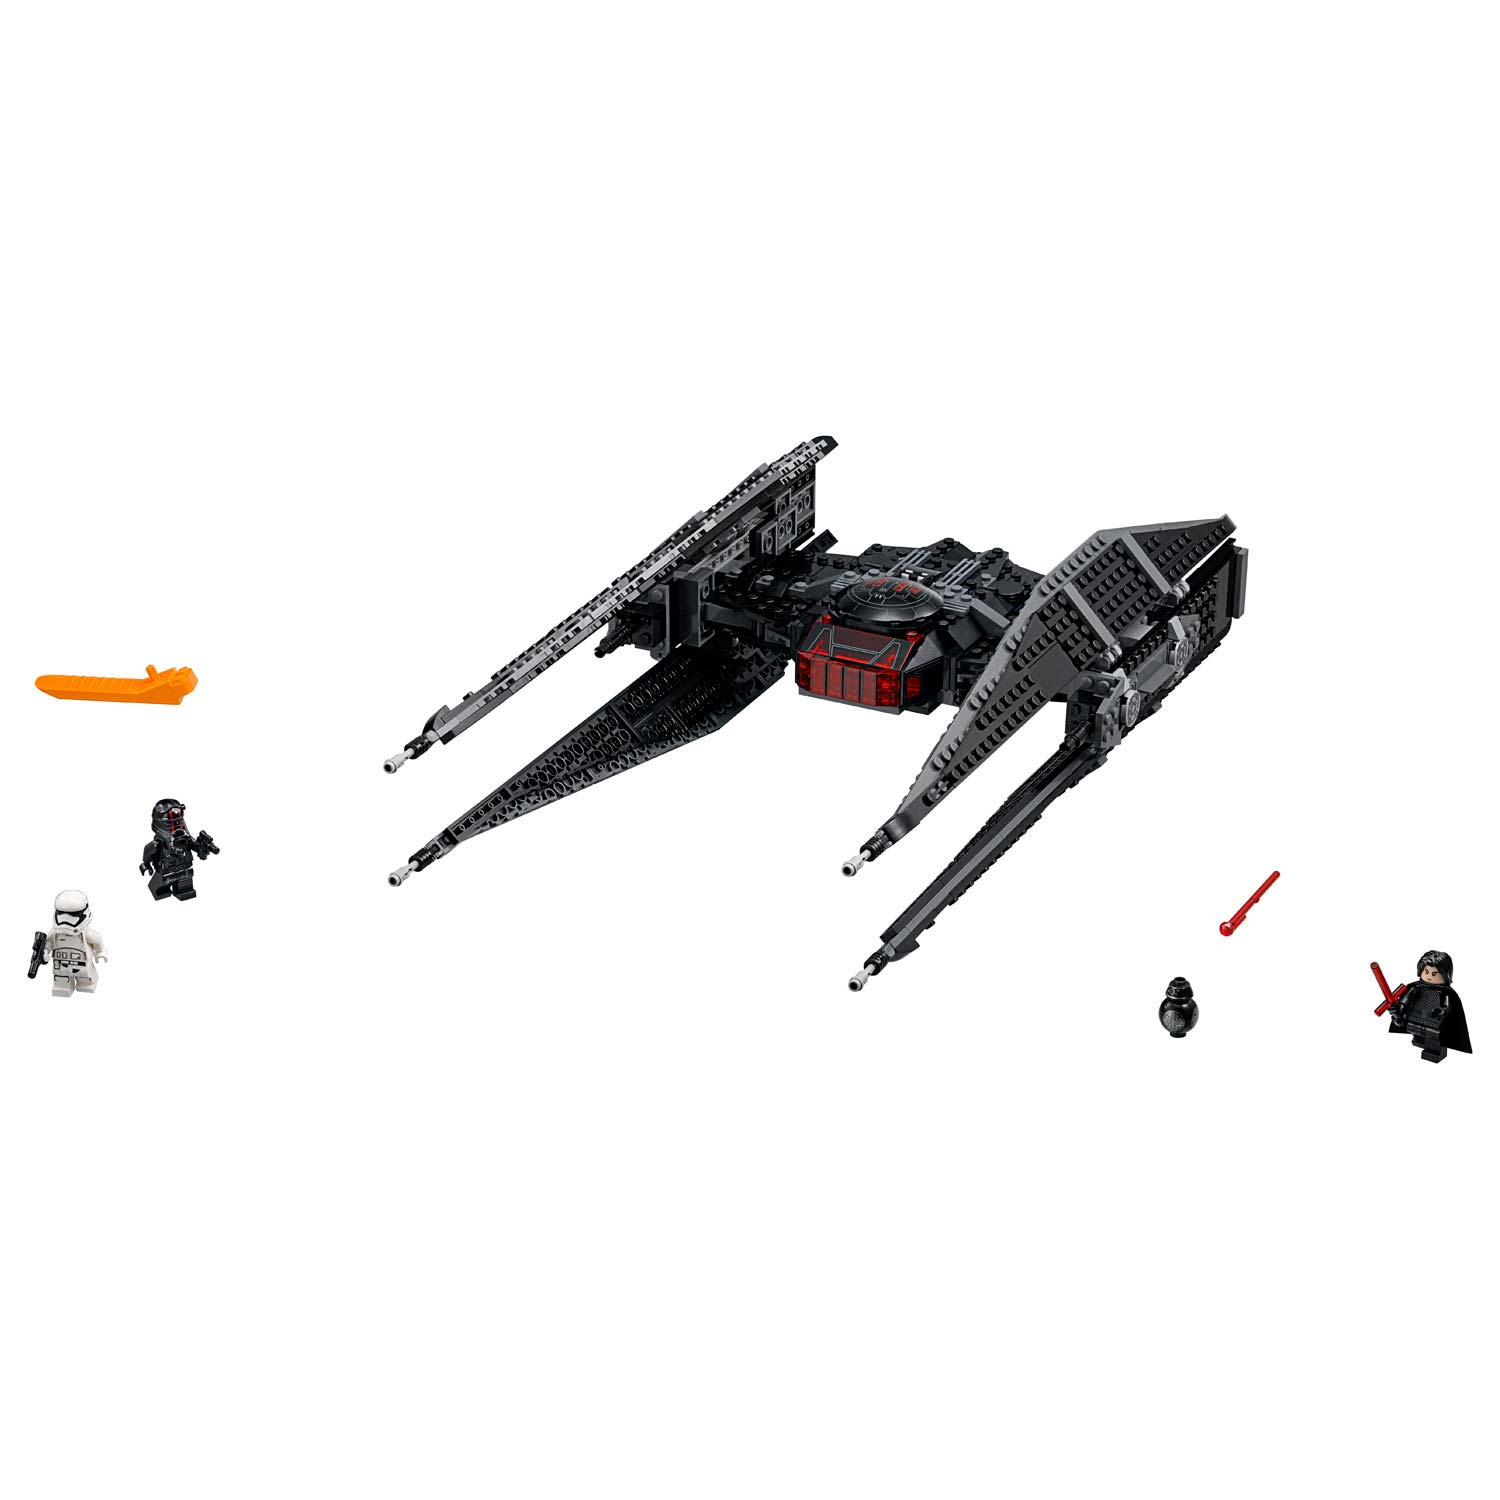 LEGO Star Wars 75179 Kylo Ren's TIE Fighter